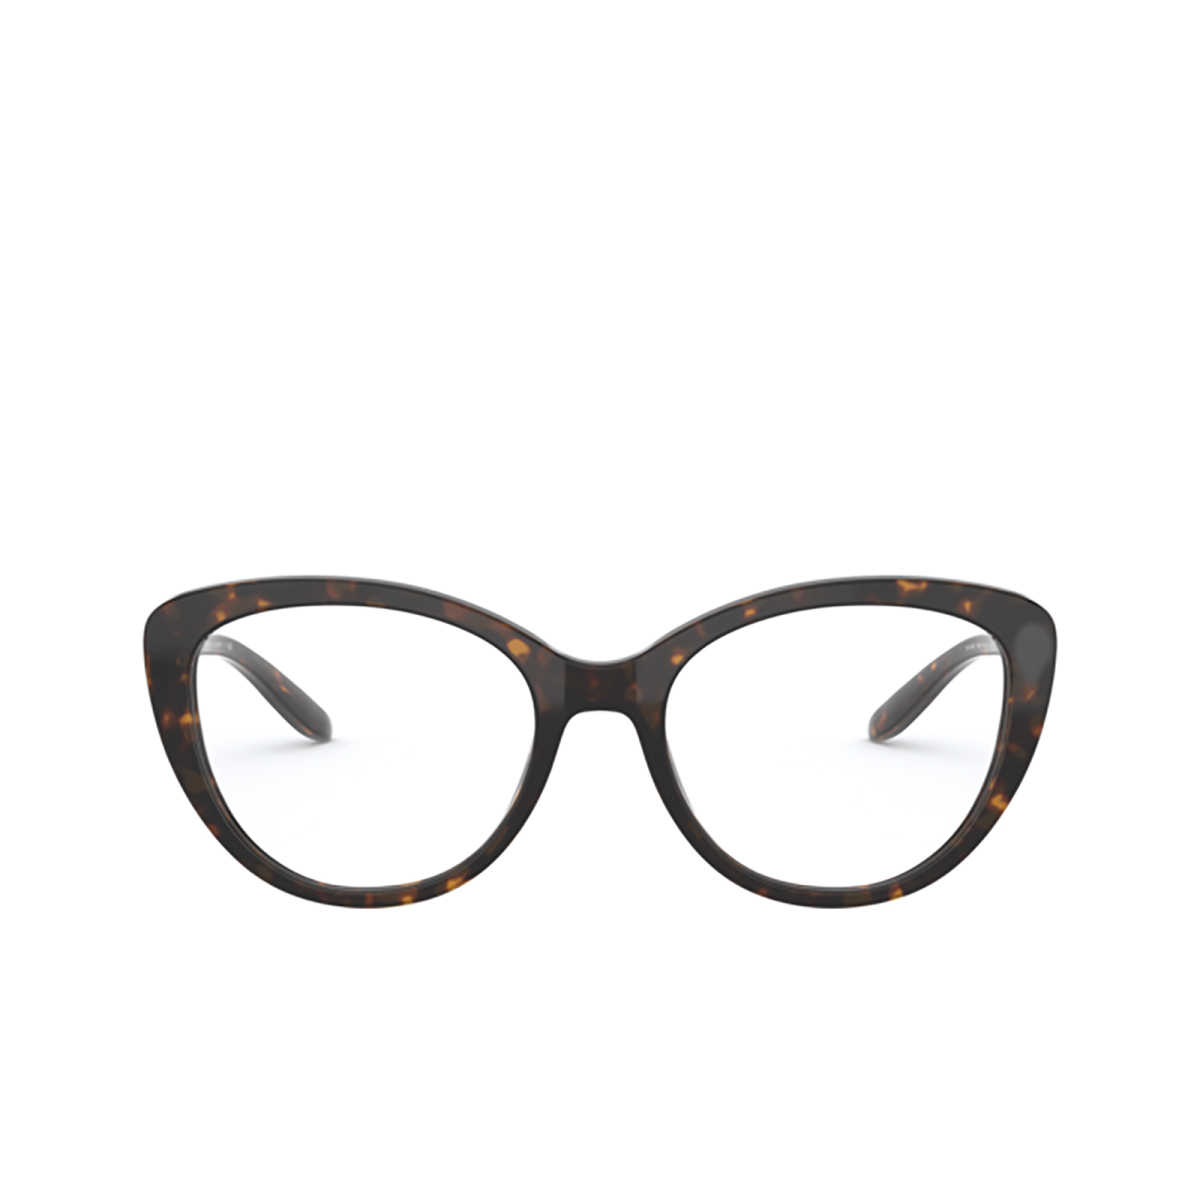 Ralph Lauren RL6199 Eyeglasses 5003 SHINY DARK HAVANA - front view